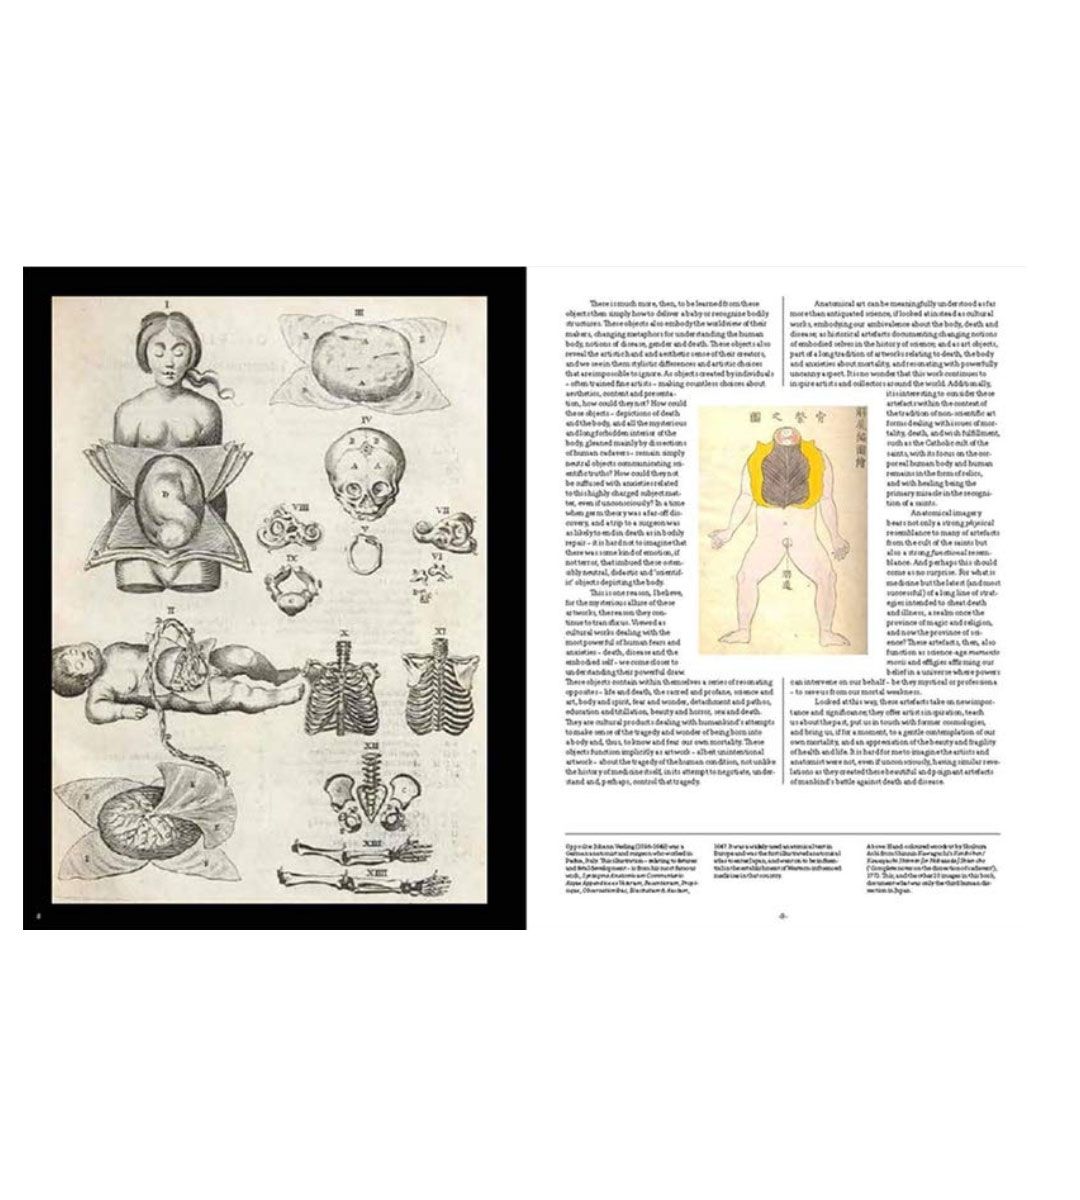 Anatomica, el arte exquisito e inquietante de la anatomía humana